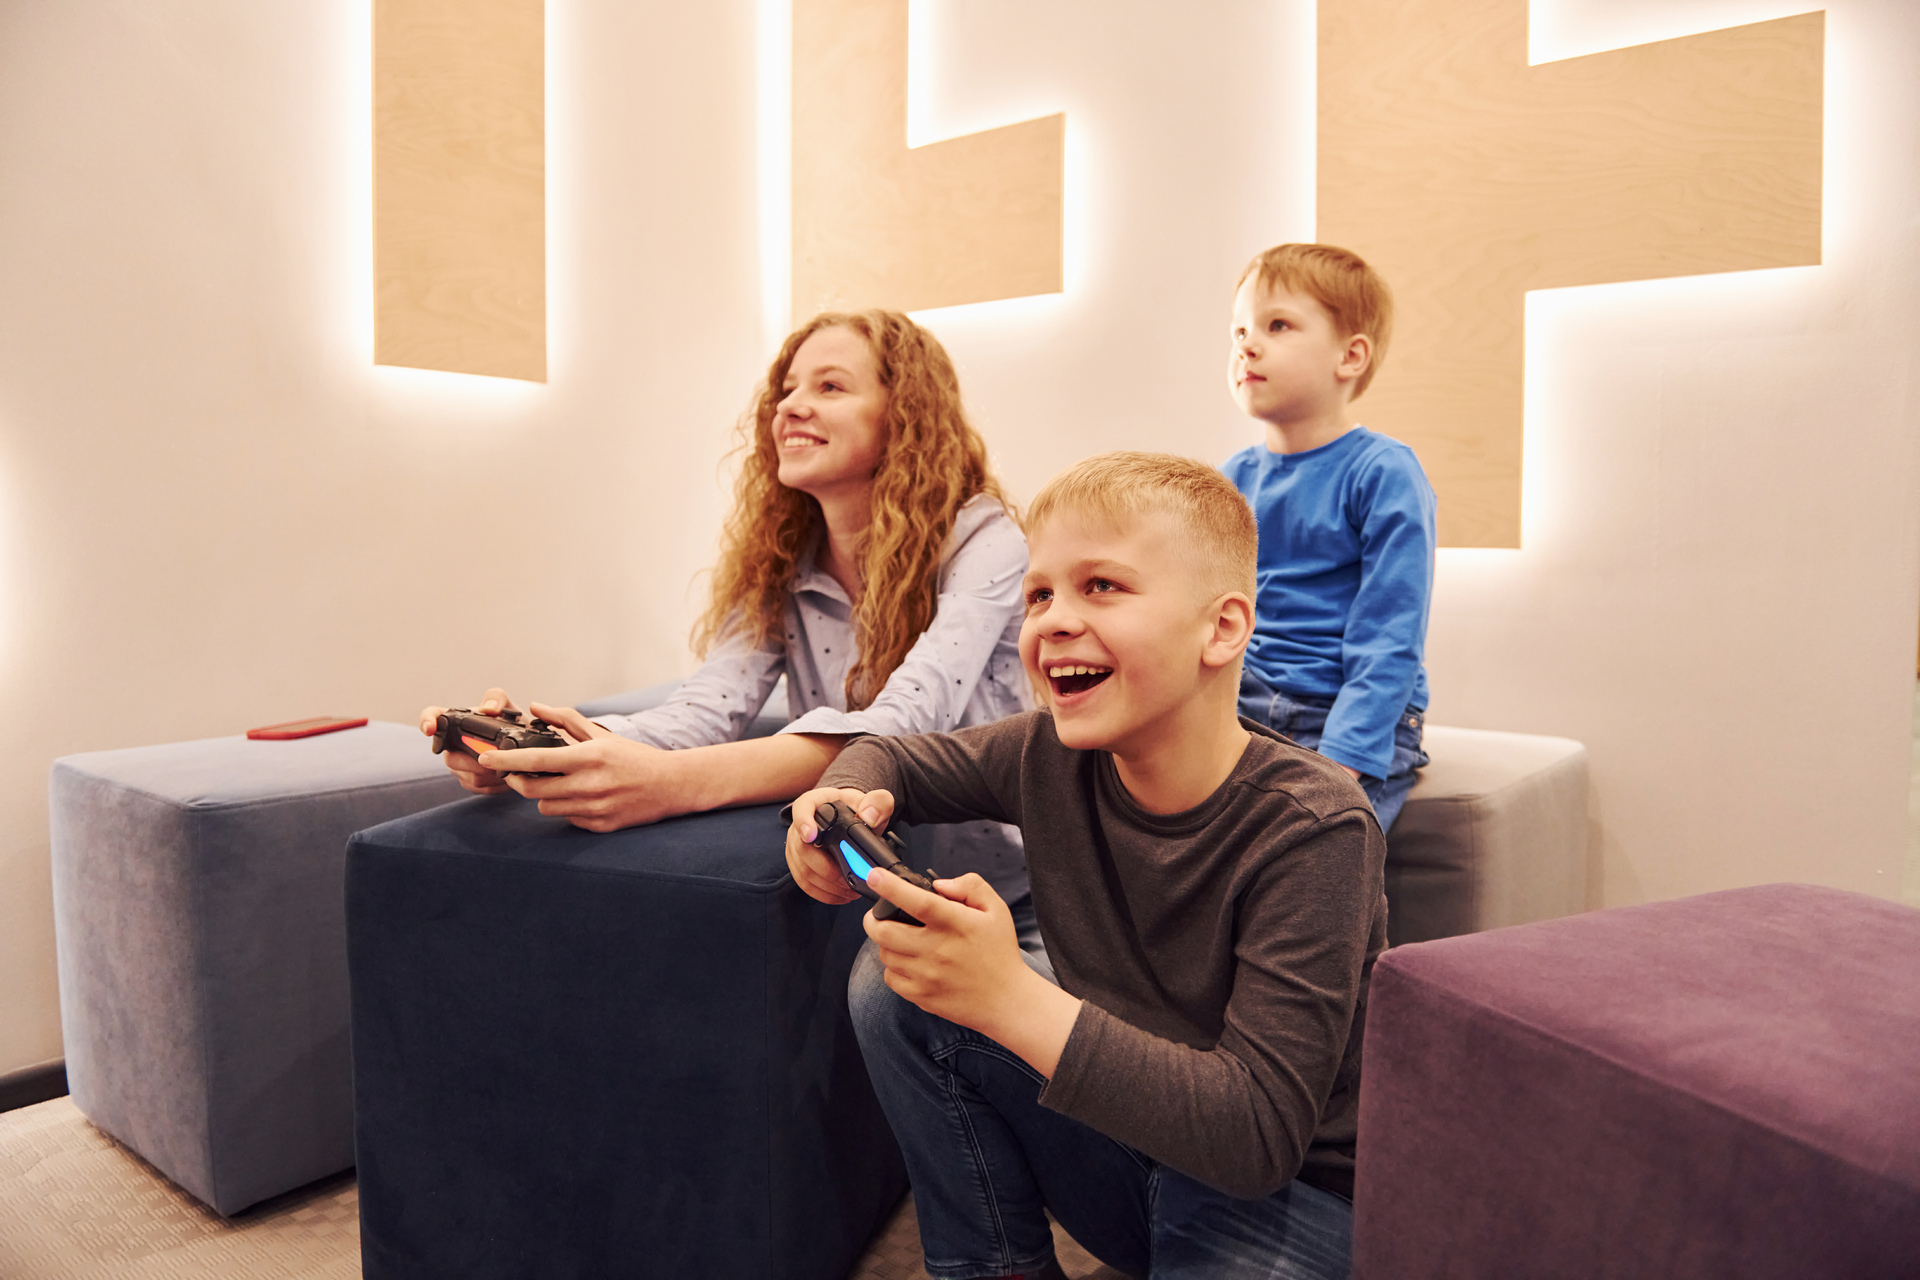 In questa immagine, una madre e i suoi figli stanno giocando a un videogioco sulla PS4 insieme